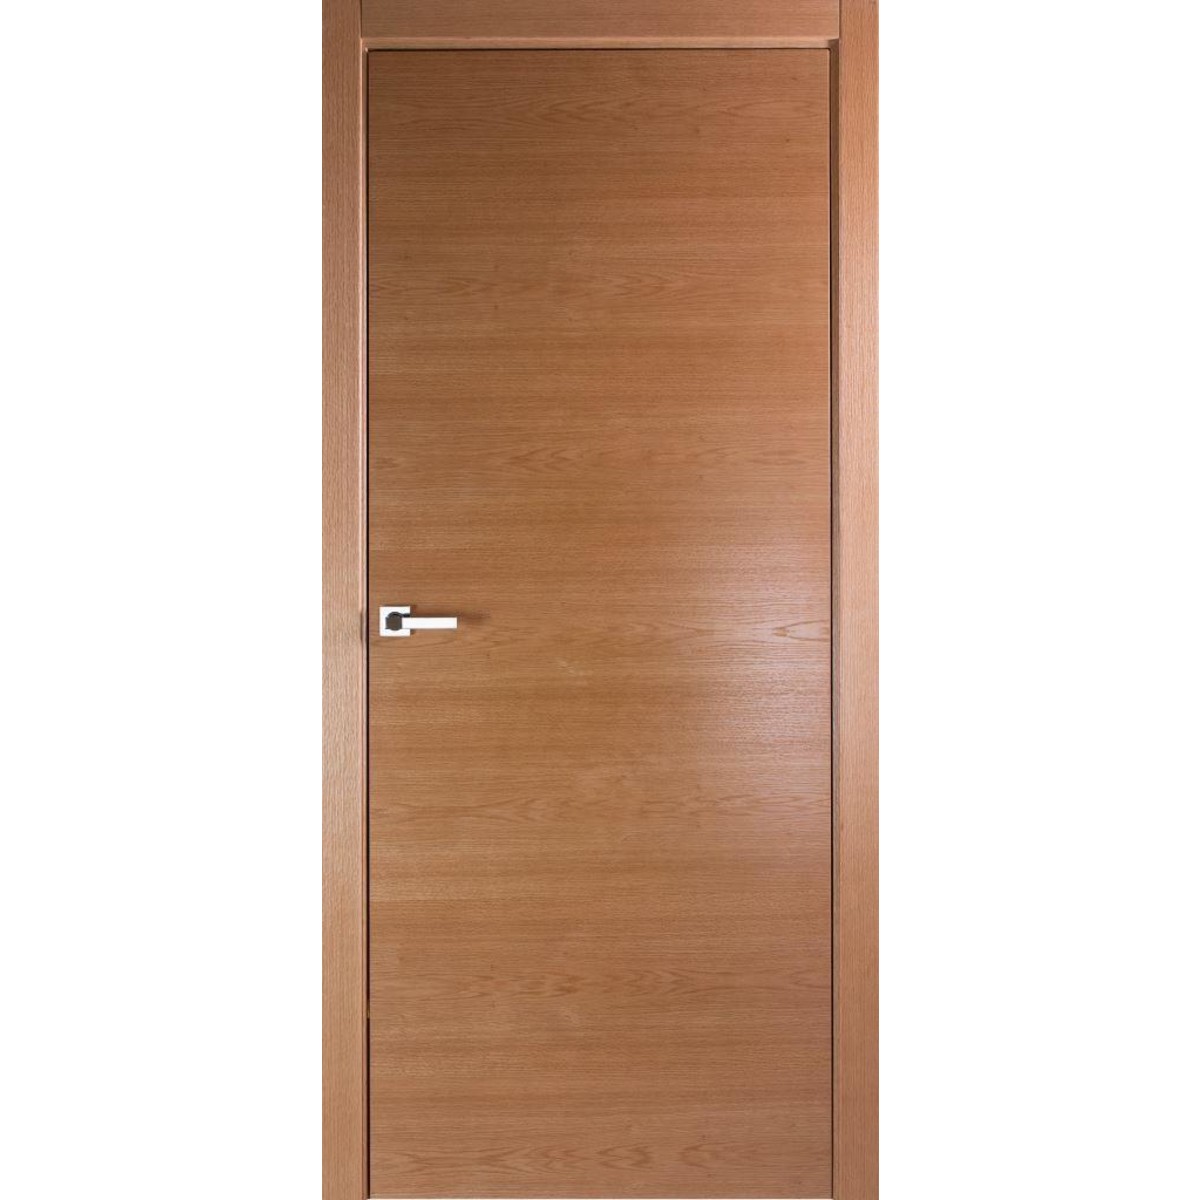 Дверь межкомнатная глухая без замка и петель в комплекте Лофтвуд 2 70x200 см шпон цвет дуб американский